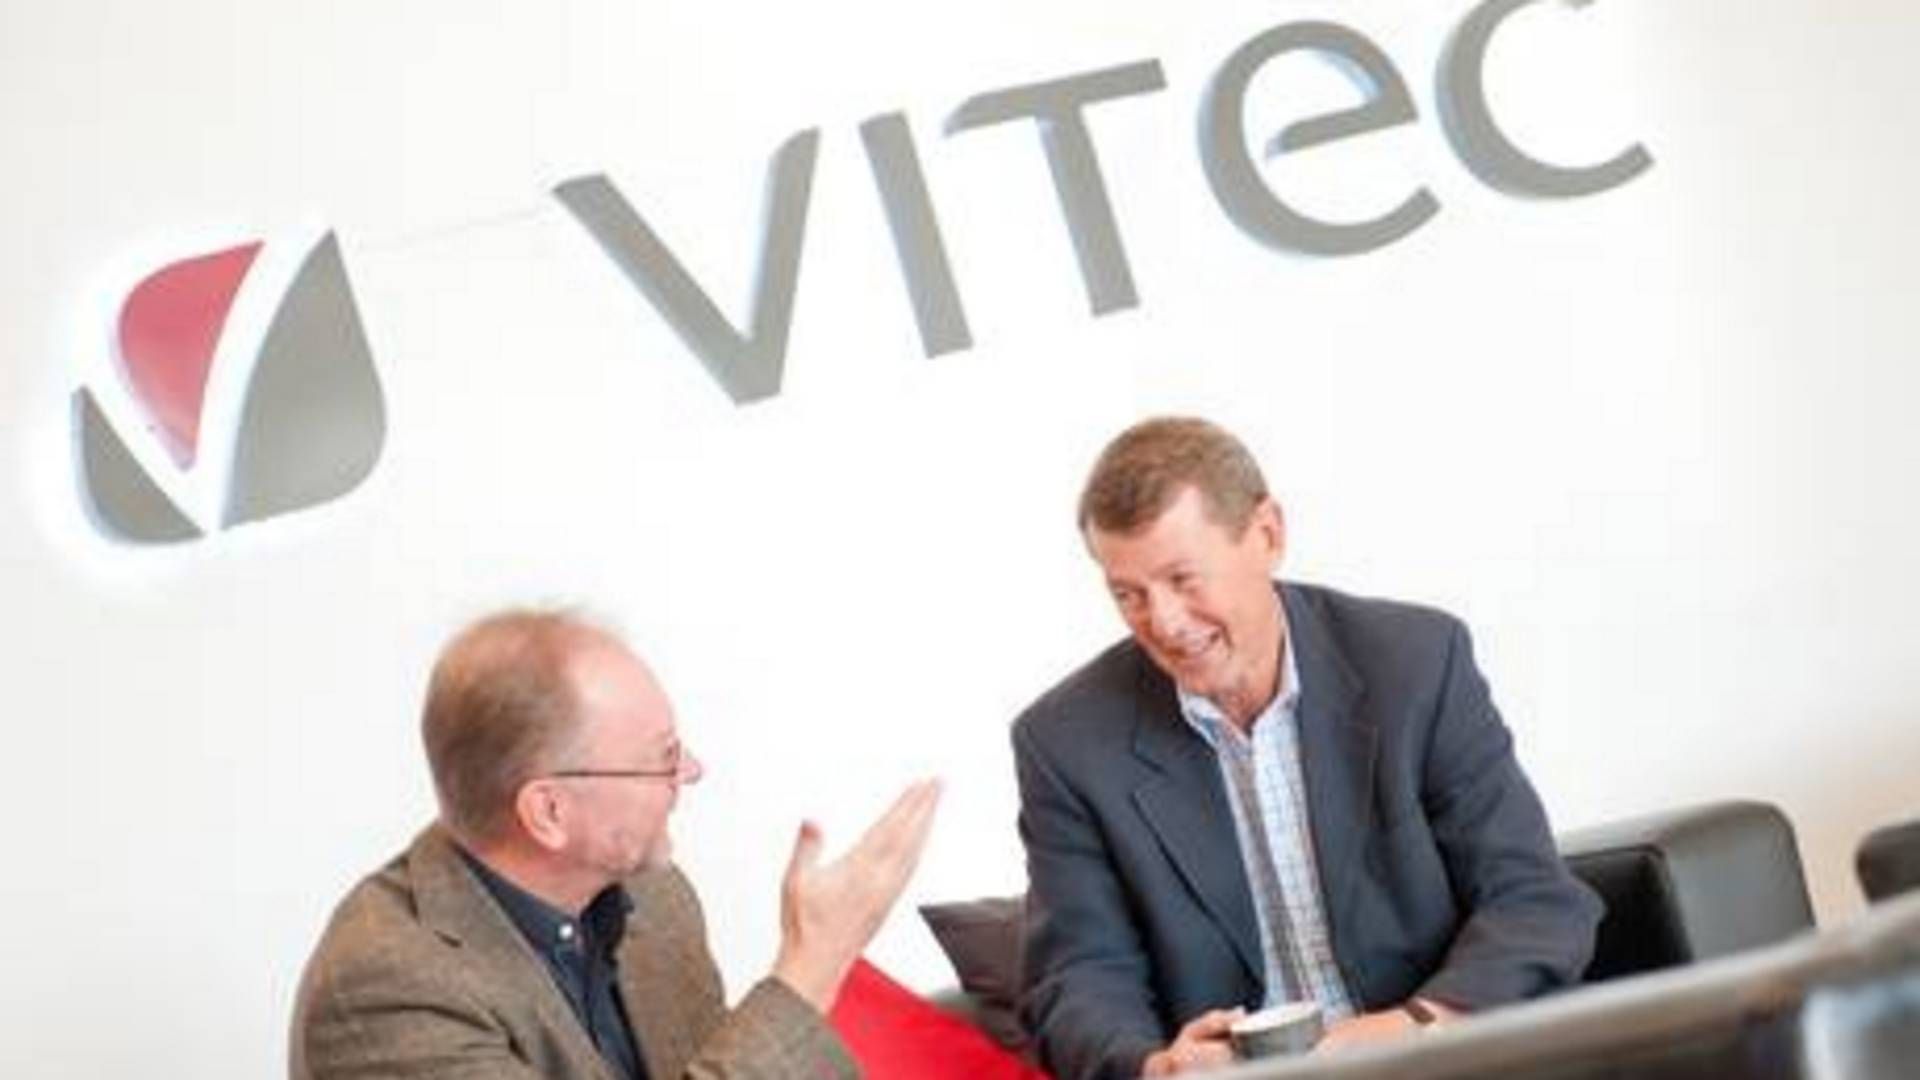 Vitecs grundlæggere Lars Stenlund og Olov Sandberg. | Foto: PR